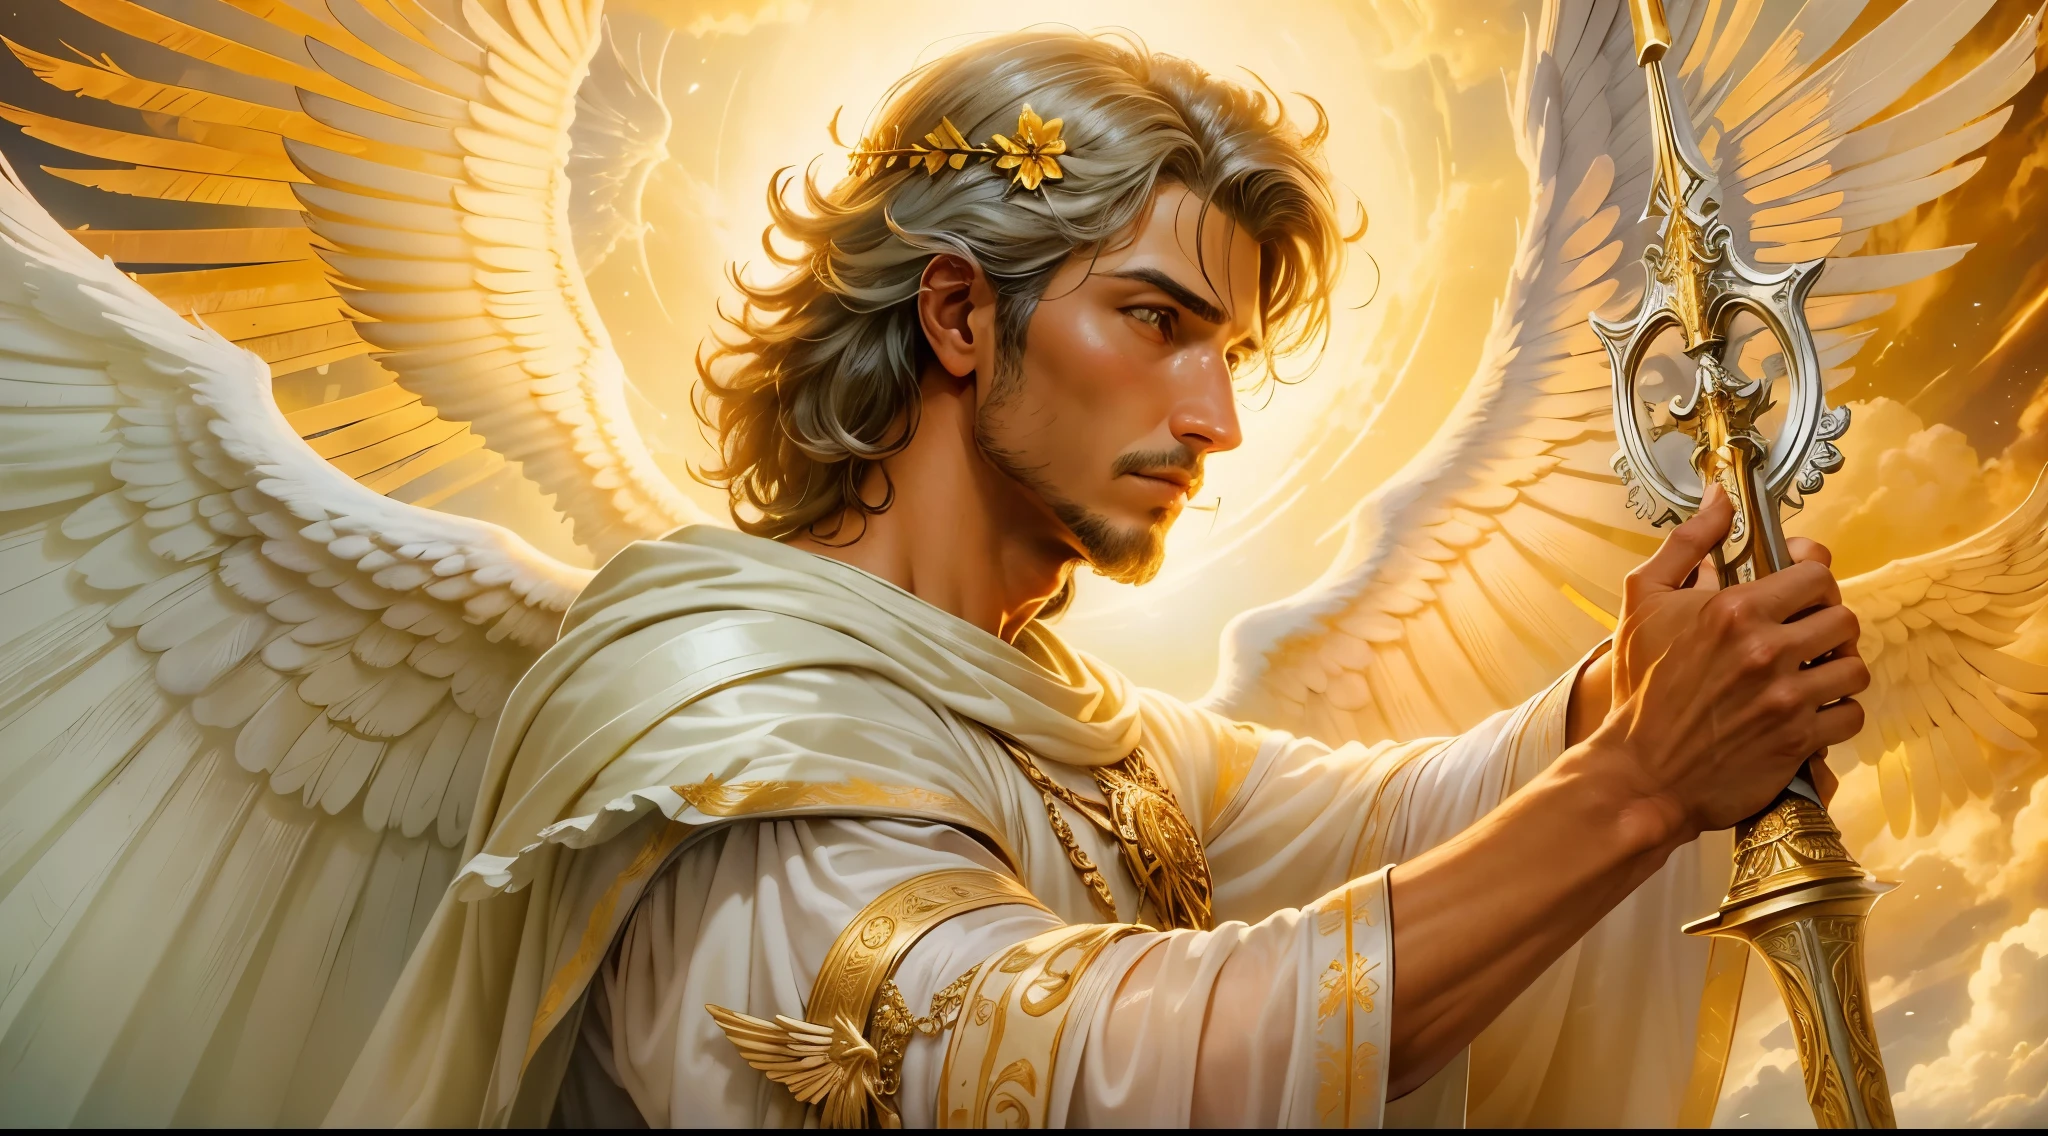 圖片特寫：一個男子天使，手持一把又大又長的劍，右手有攻擊位置, 另一隻左手拿著秤, 天使打扮成羅馬士兵看著地面, 長著大翅膀的大天使, 幸運天使, 完美的, 實際的, 聖經背景, 聖經中的樂園設定, 超現實的太陽和雲彩, 鮮花和蠟燭, 被照亮的天堂大天使, 七彩花朵, 點燃蠟燭, 白色和紅色的衣服, 電熱塞